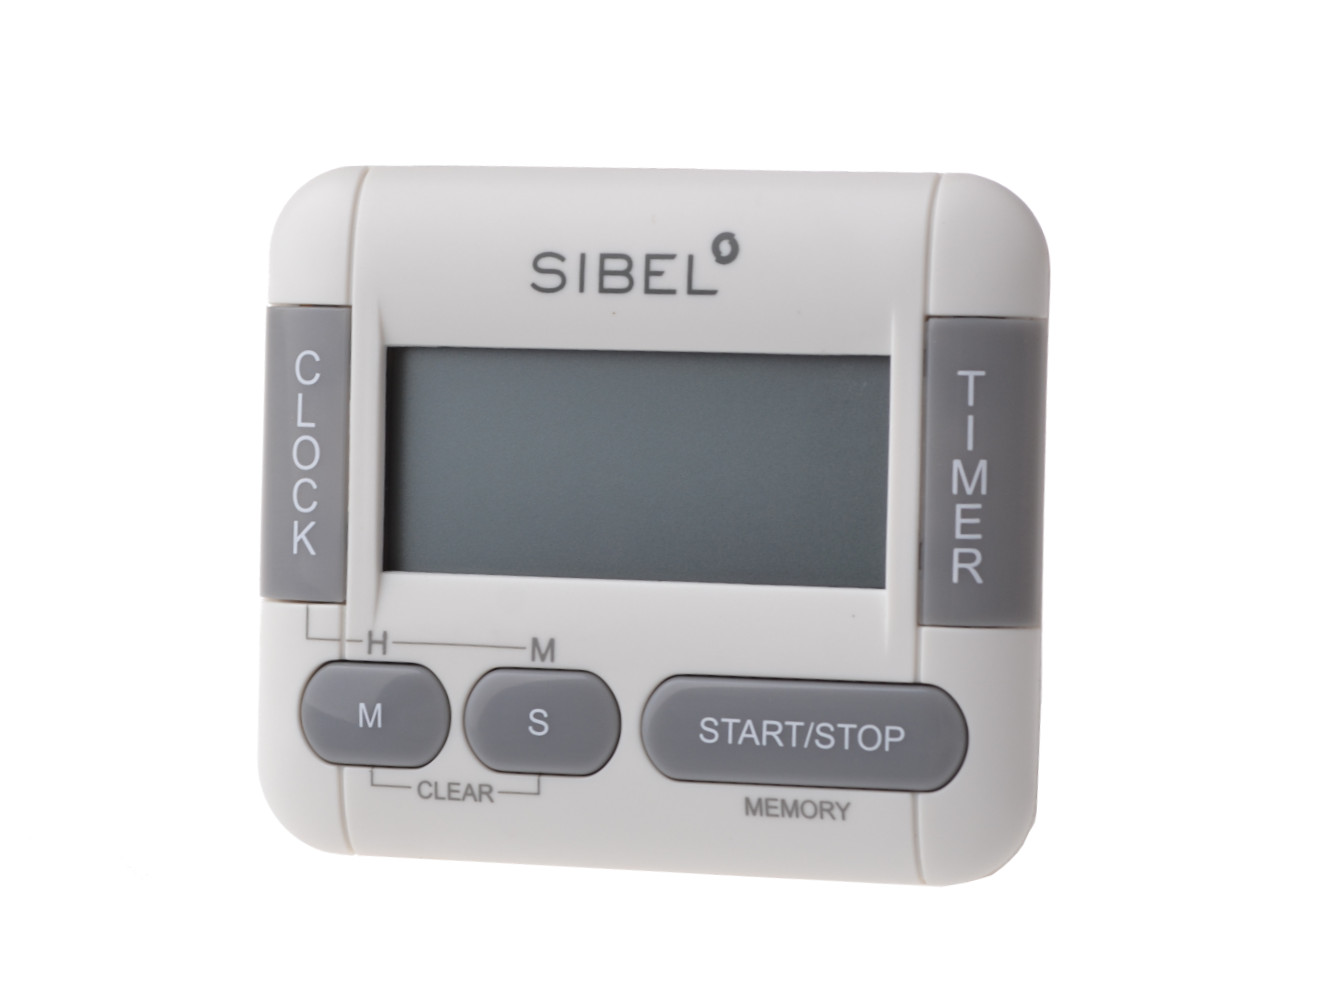 Digitální časovač / minutka Sibel - bílá (0090044) + dárek zdarma